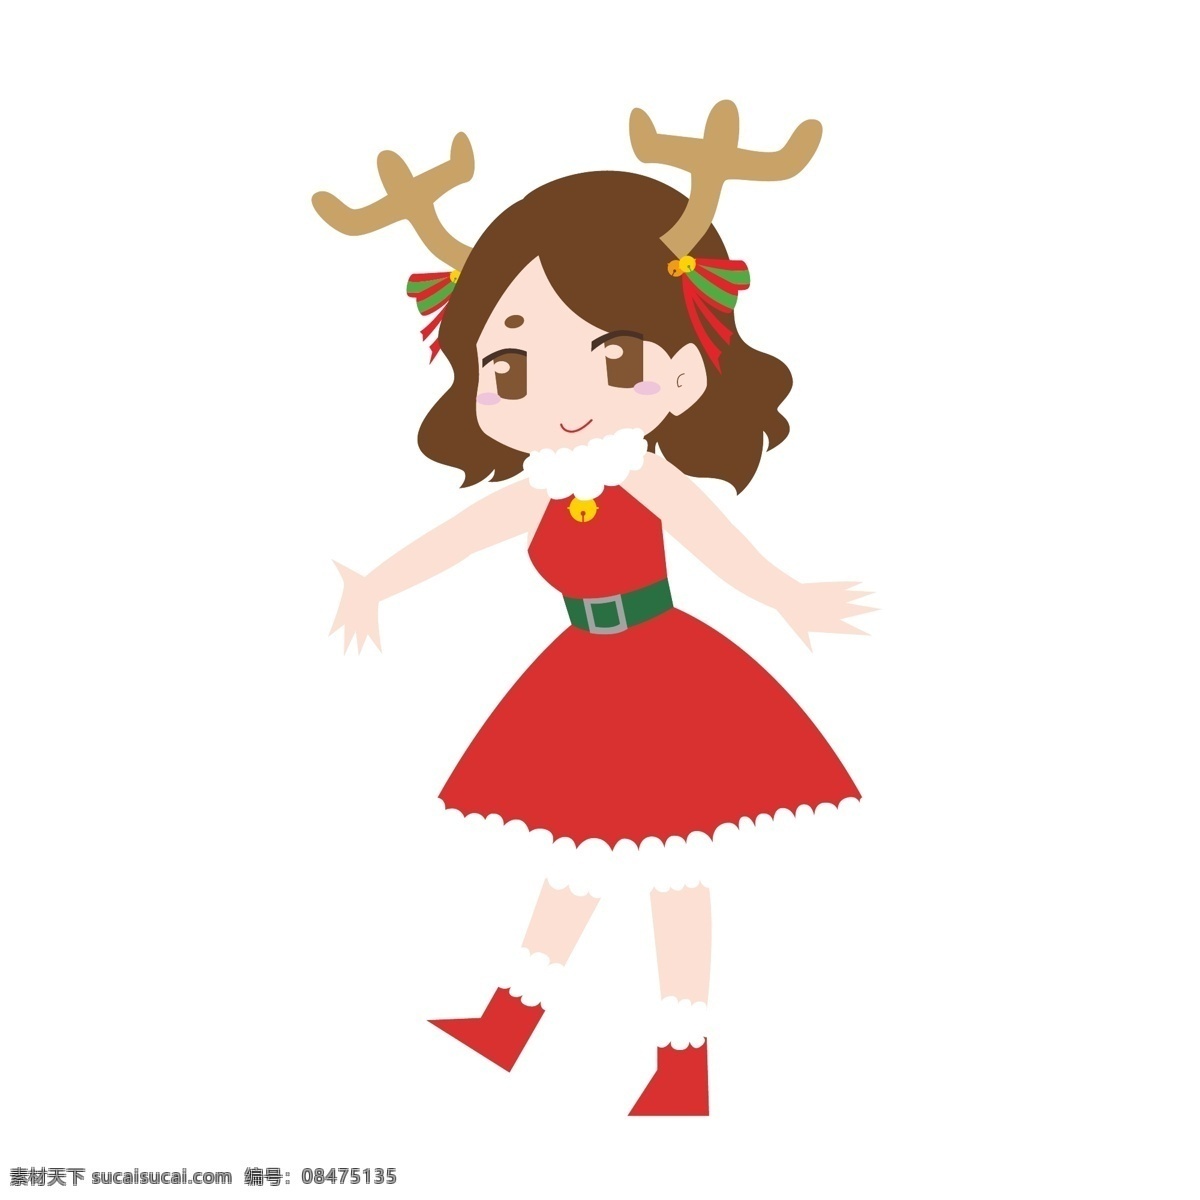 圣诞节 女孩 小鹿 q 版 元素 圣诞 圣诞夜 少女 红色 鹿角 可爱 手绘 矢量 腰带 毛领 绿色 裙子 靴子 短发